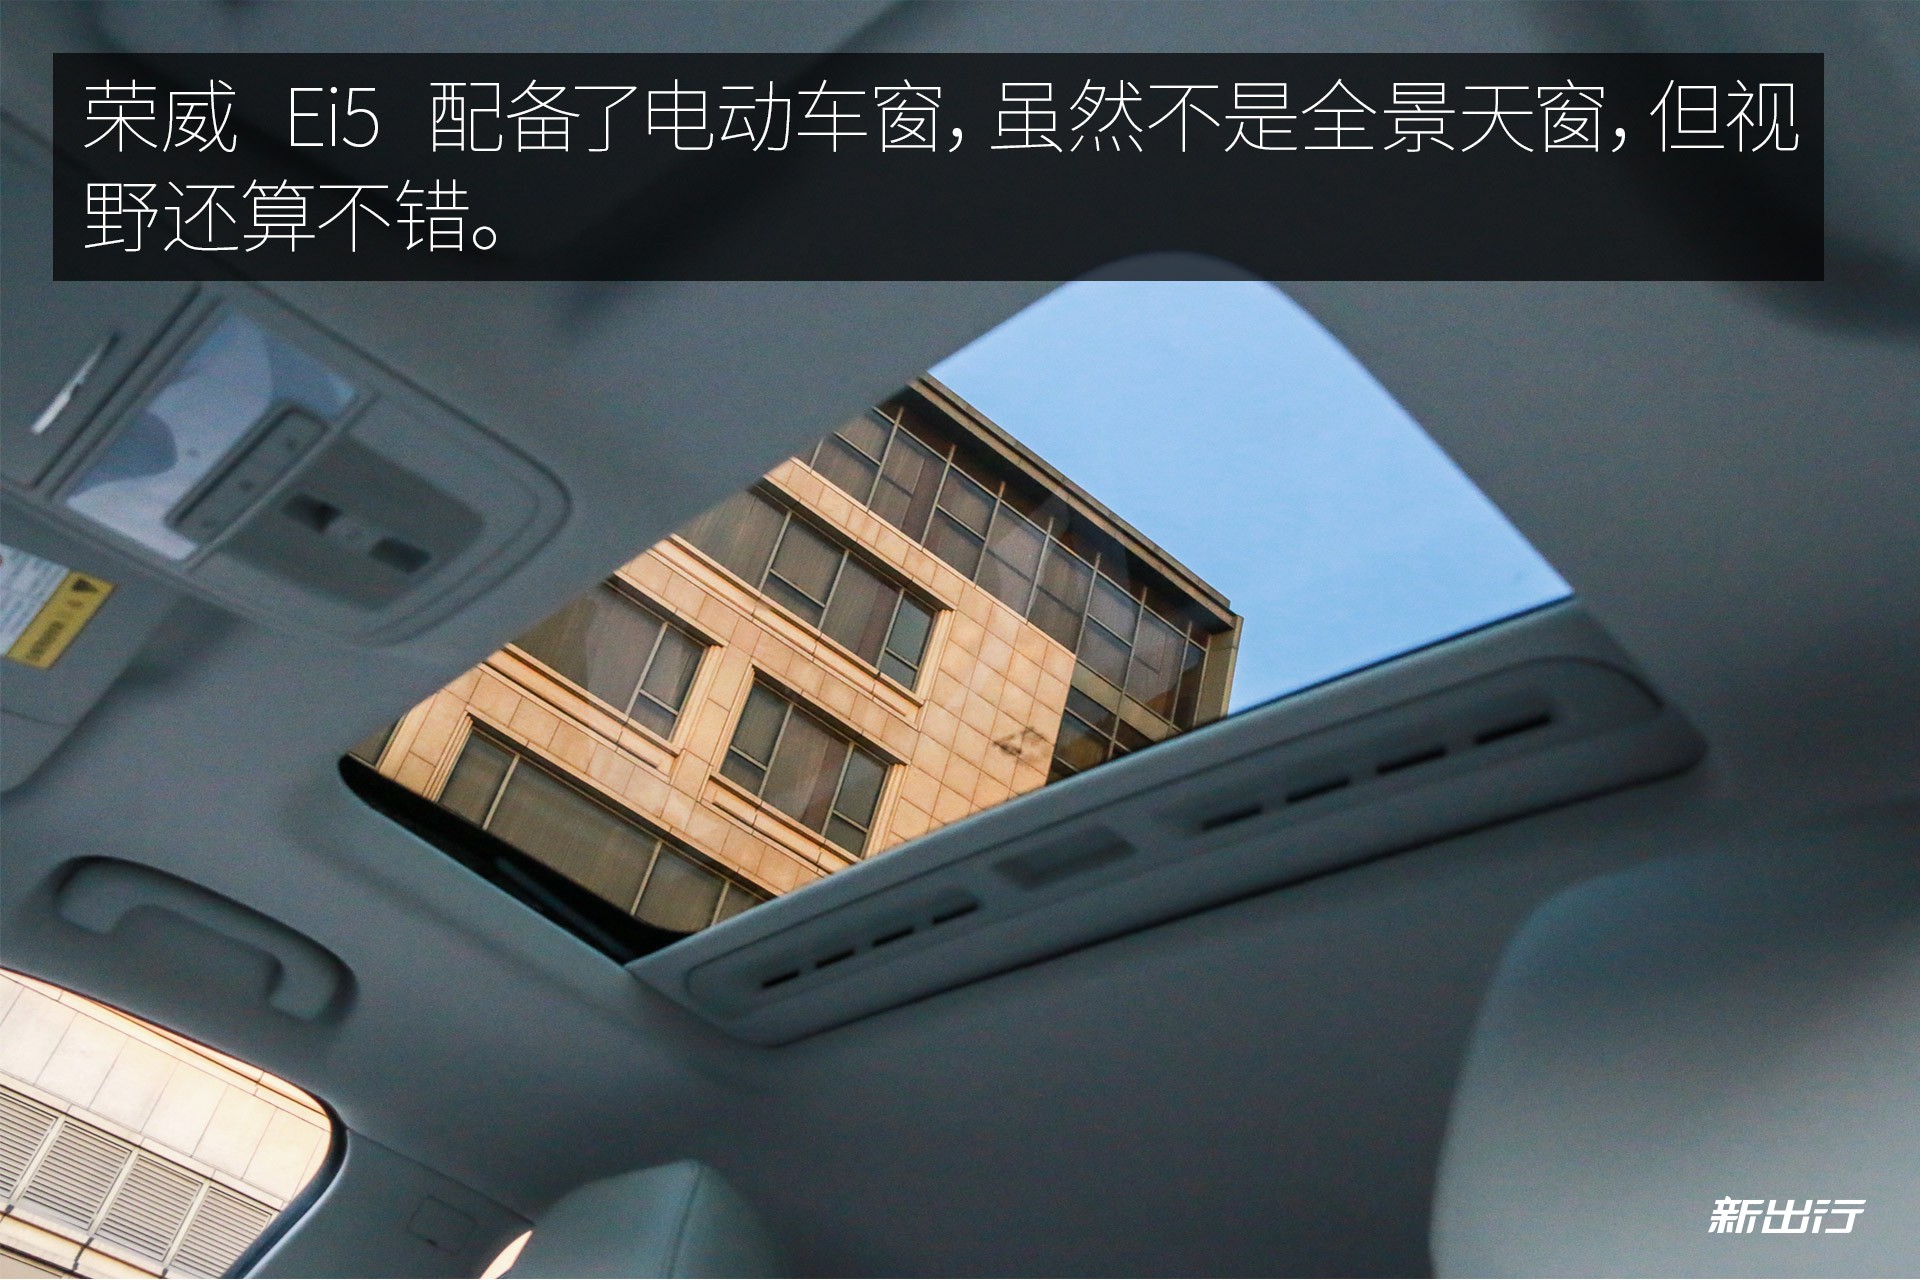 实拍全球首款纯电动休旅车荣威 Ei5 美得让人心动